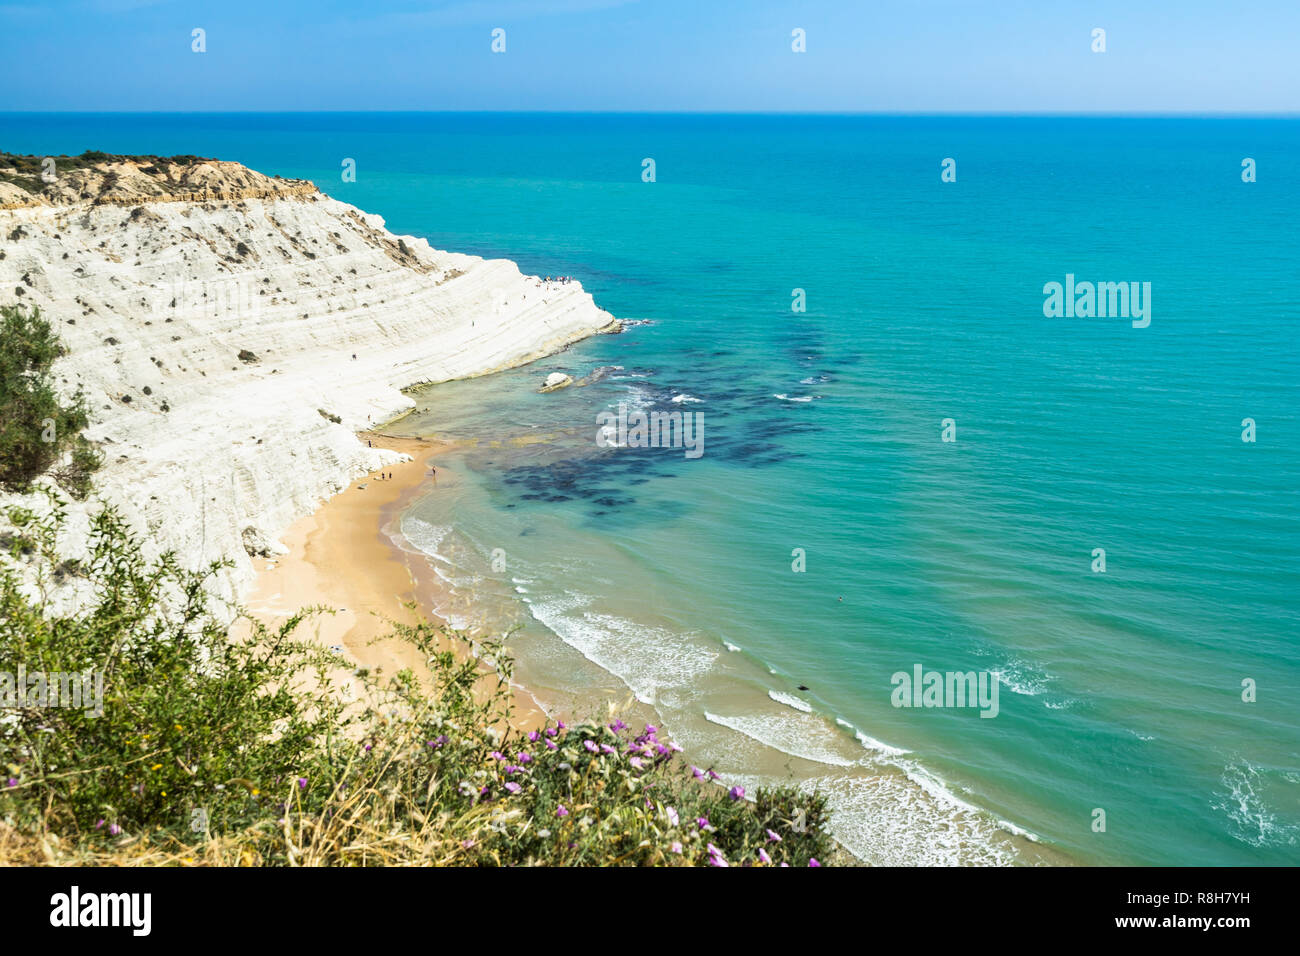 Incredibile paesaggio marino del Mediterraneo vicino a Scala dei Turchi bianca scogliera, Realmonte, in provincia di Agrigento, Sicilia, Italia Foto Stock